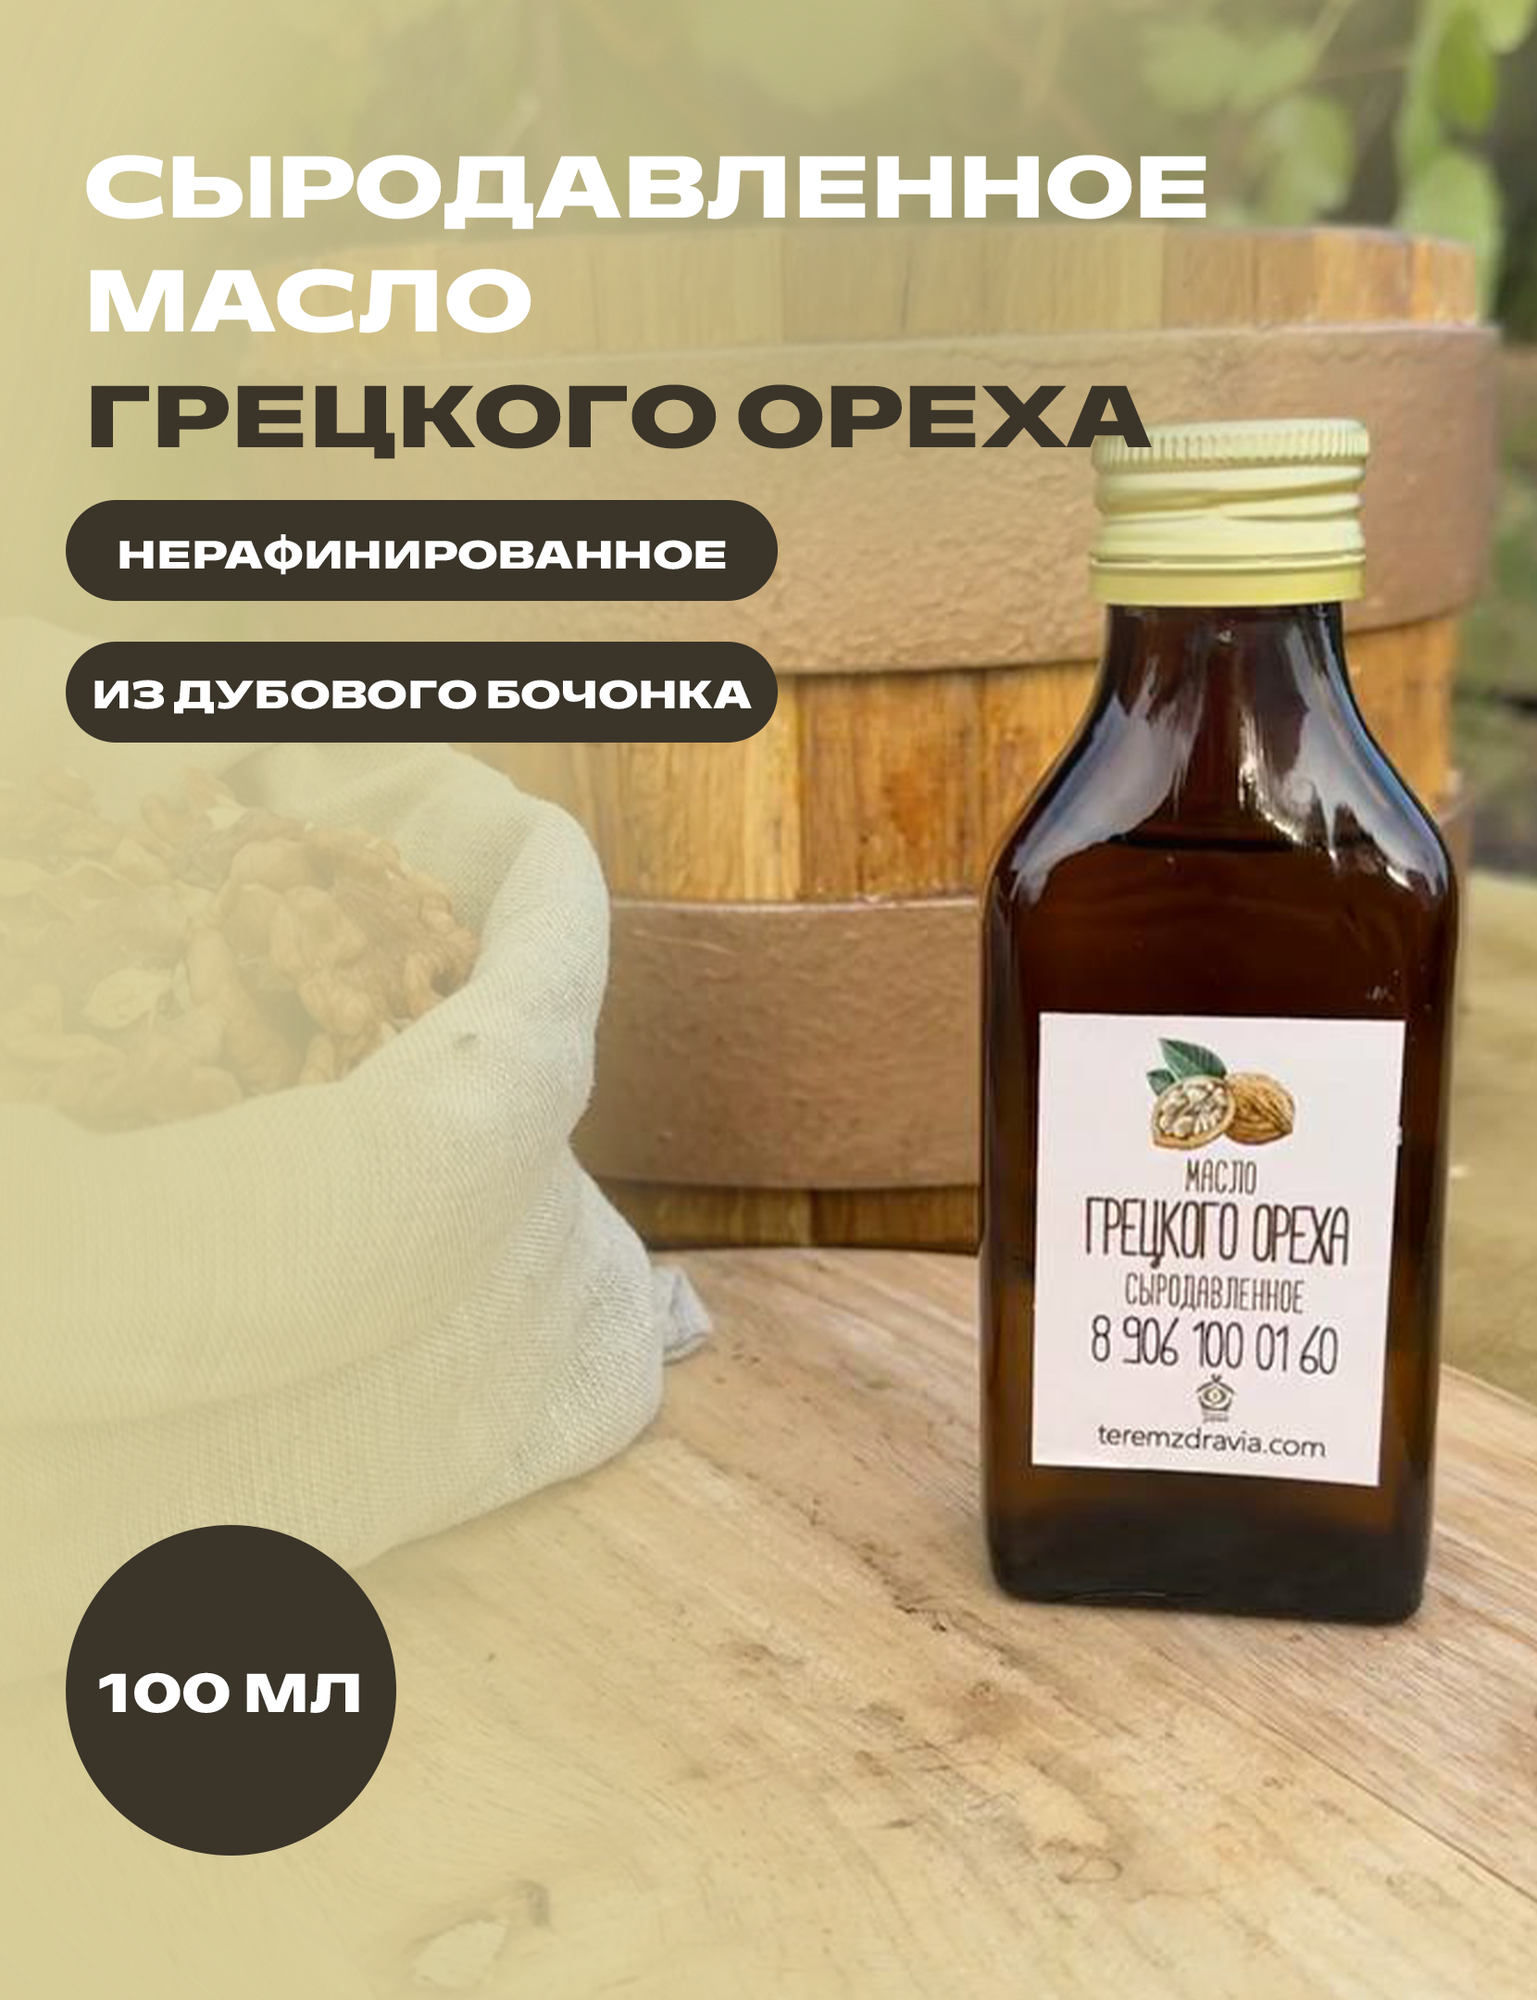 Масло грецкого ореха сыродавленное натуральное свежевыжатое в бочонке, 100 мл